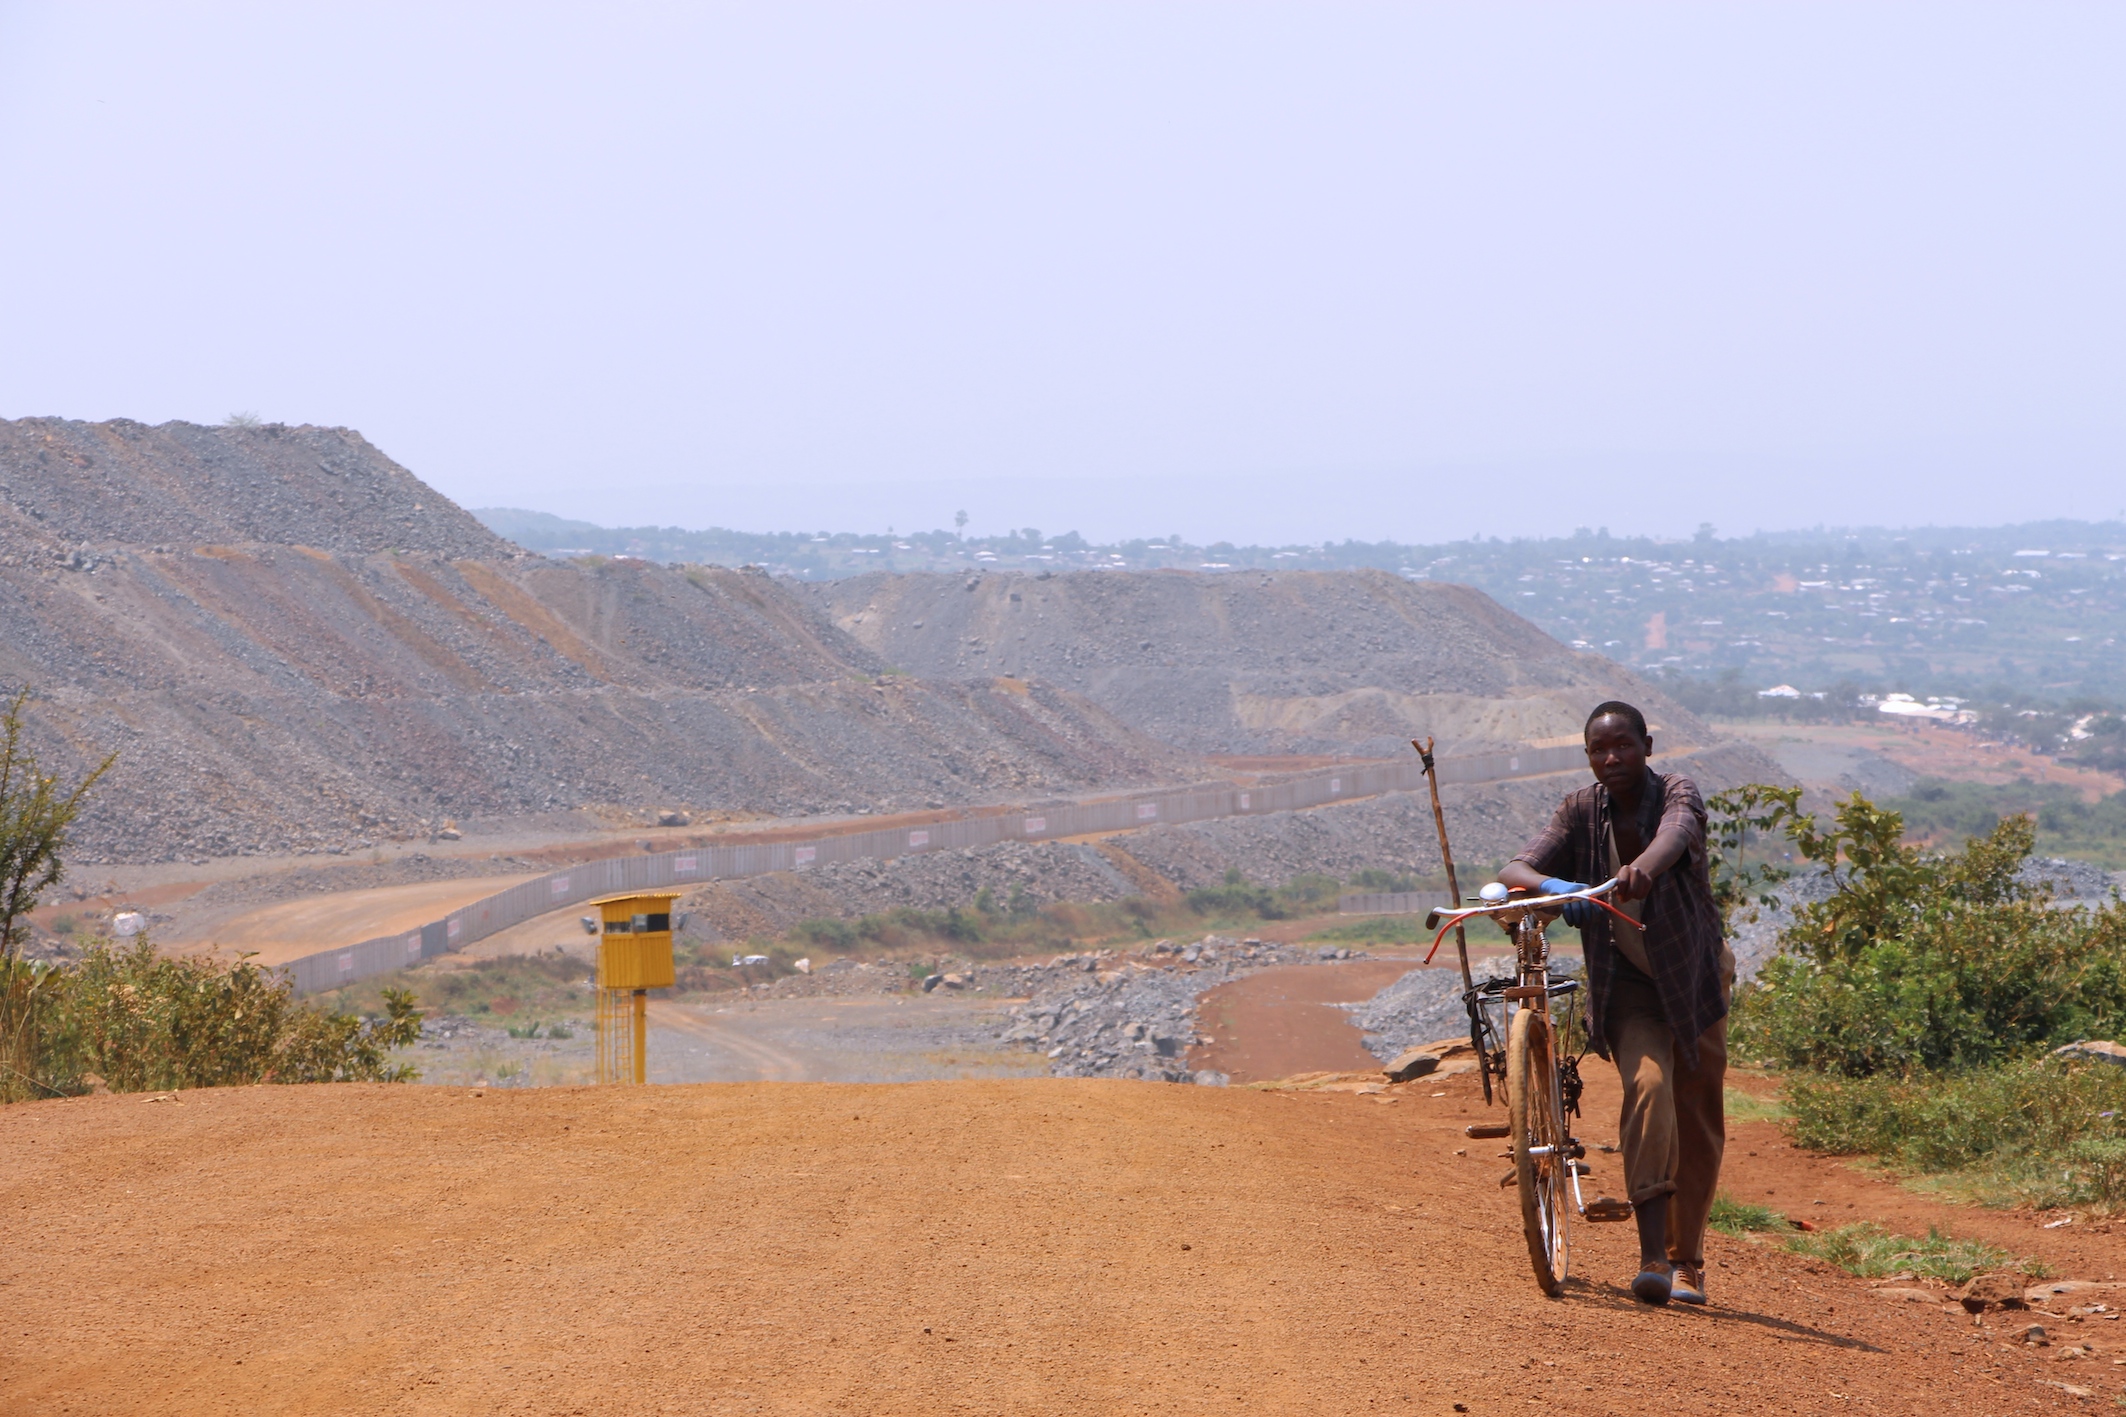 North Mara Gold Mine ligger like ved siden av småbyen Nyamongo i Mara-regionen nordvest i Tanzania. I bakgrunnen er muren som har blitt satt opp rundt det meste av gruven, samt et av vakttårnene som omringer den. Foto: Moses Matthews